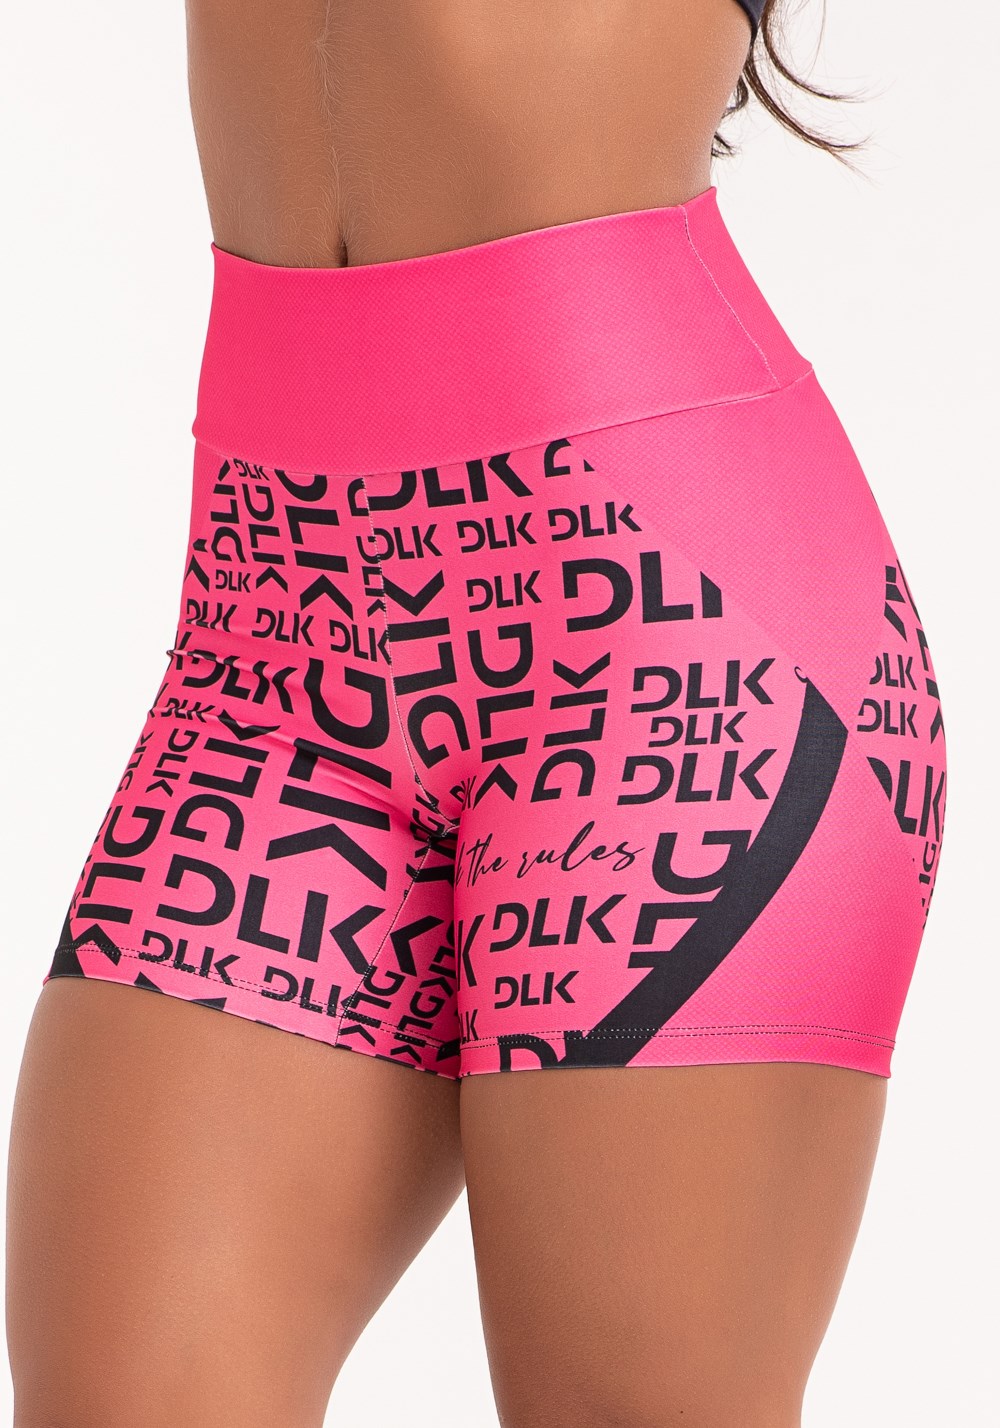 Short fitness feminino estampado dlk frases pink printed